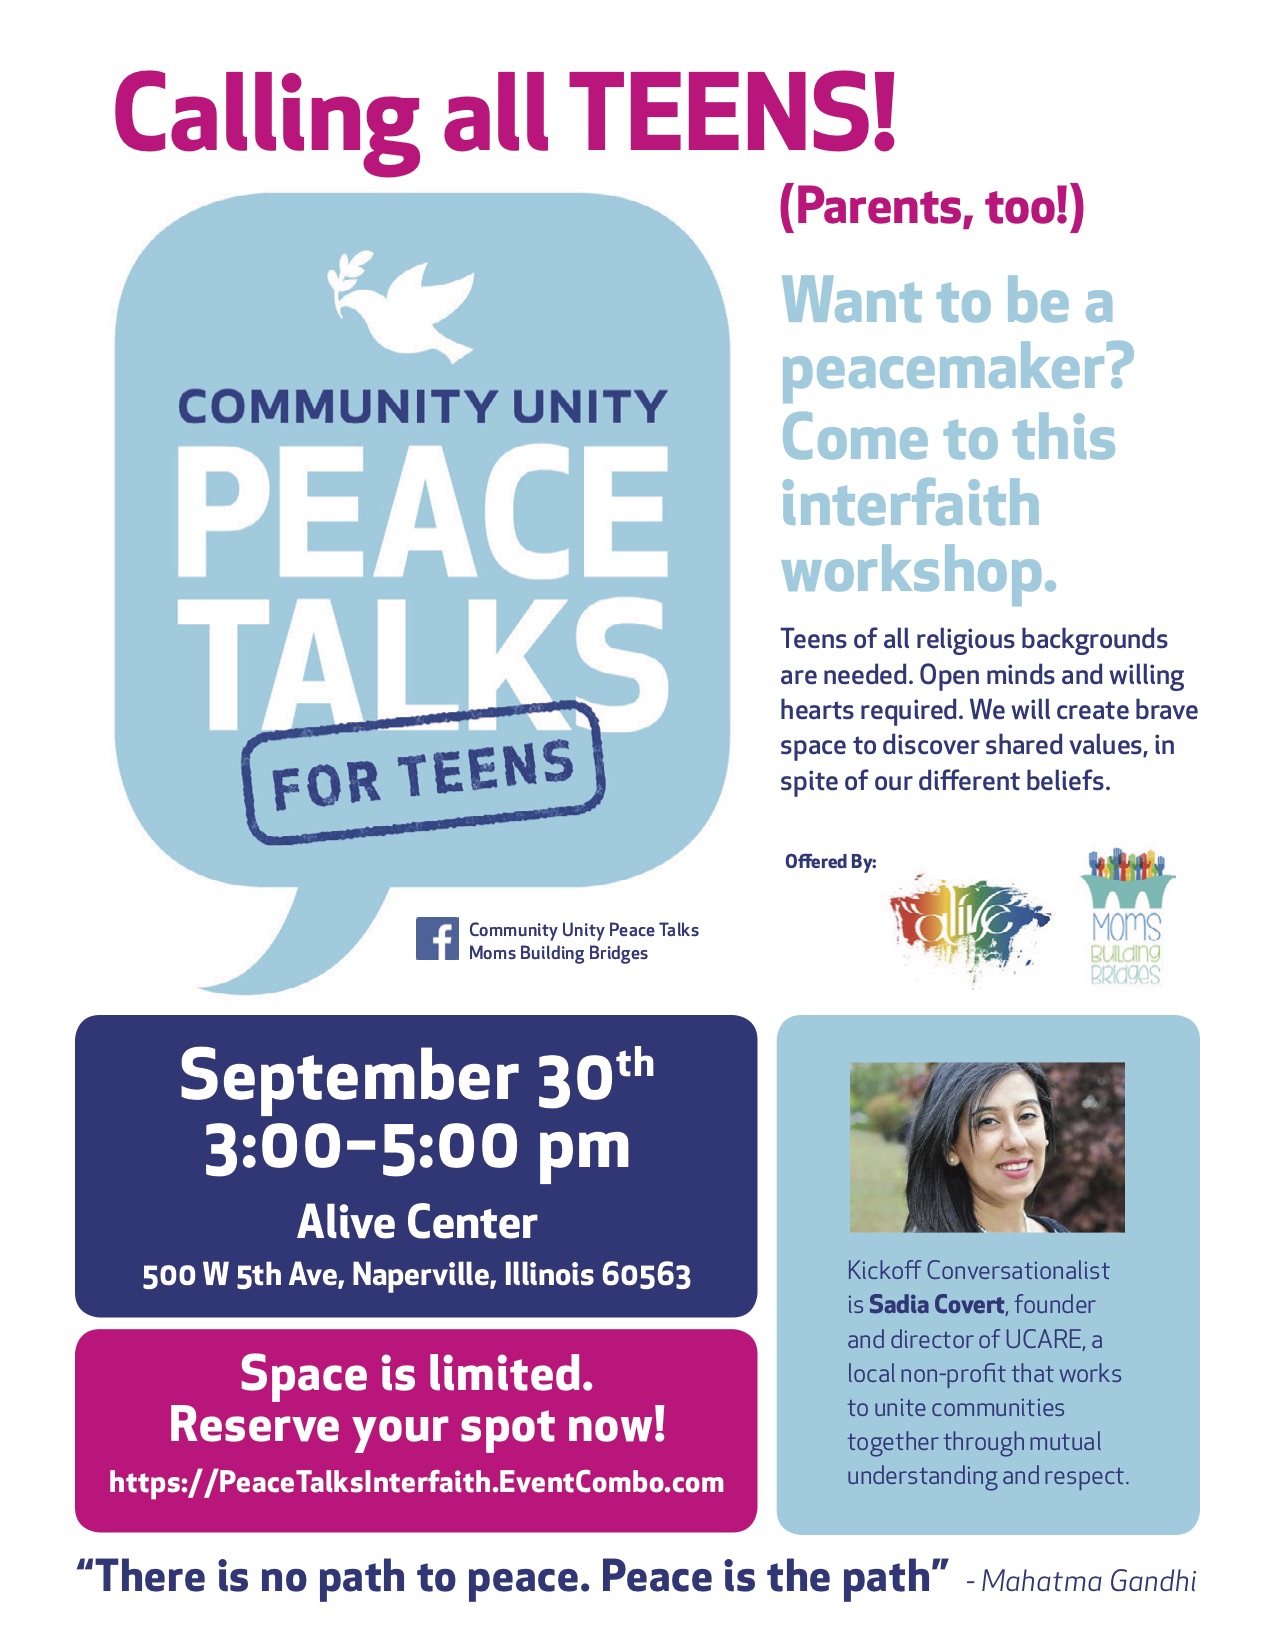 COMMUNITY UNITY
PEACE TALKS for TEENS:  An Interfaith Workshop